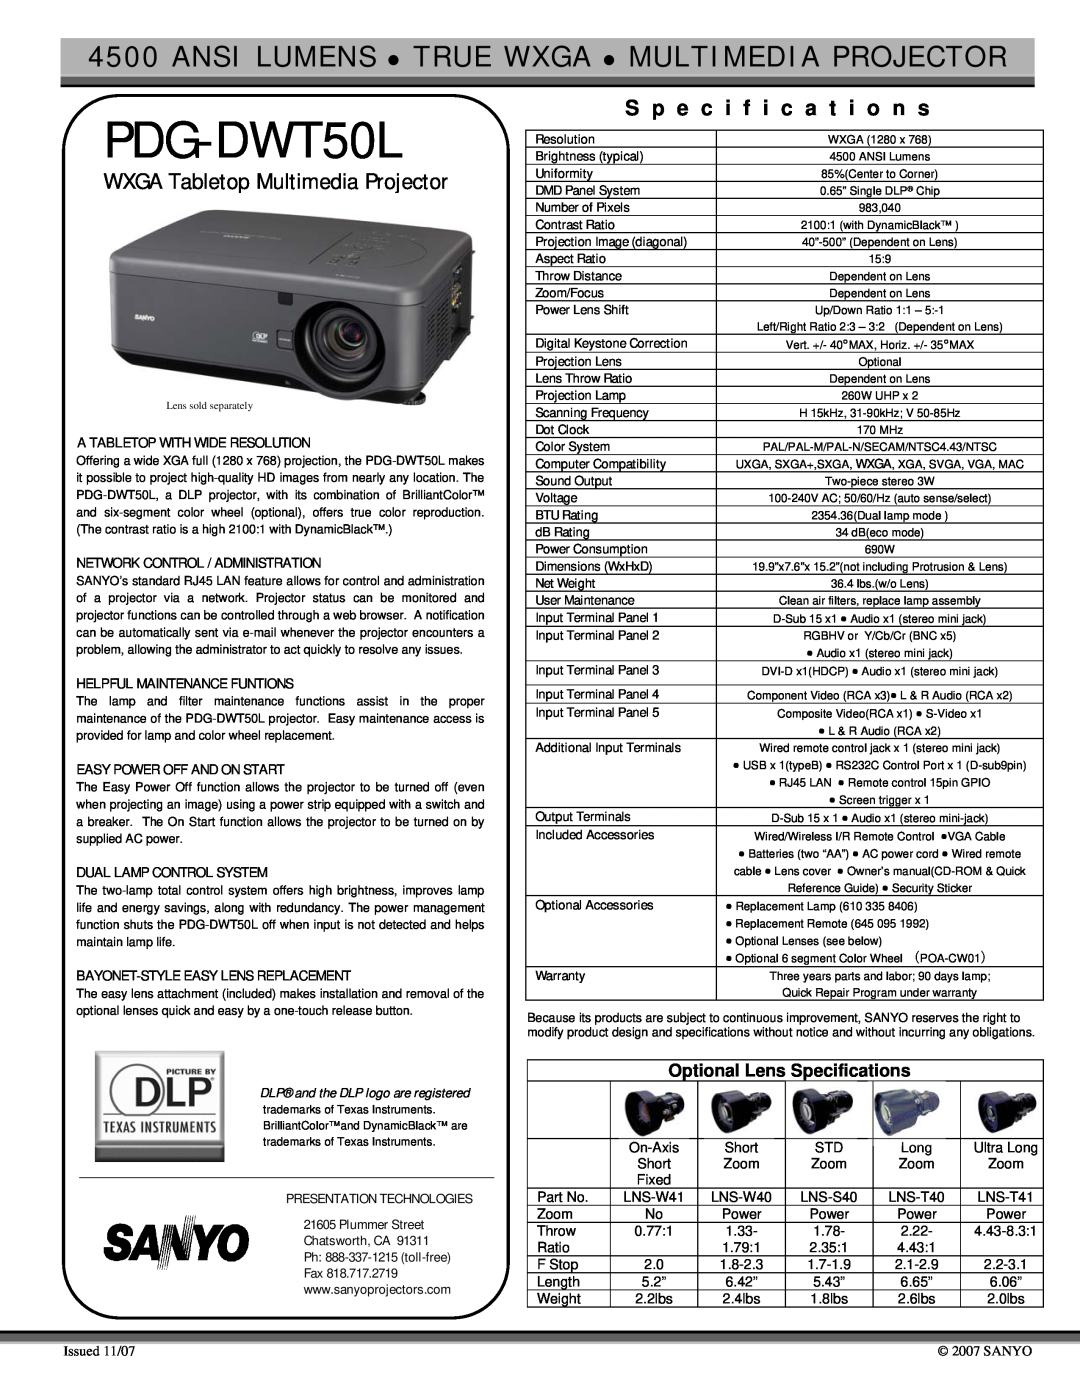 Sanyo PDG-DWT50L specifications S p e c i f i c a t i o n s, WXGA Tabletop Multimedia Projector 